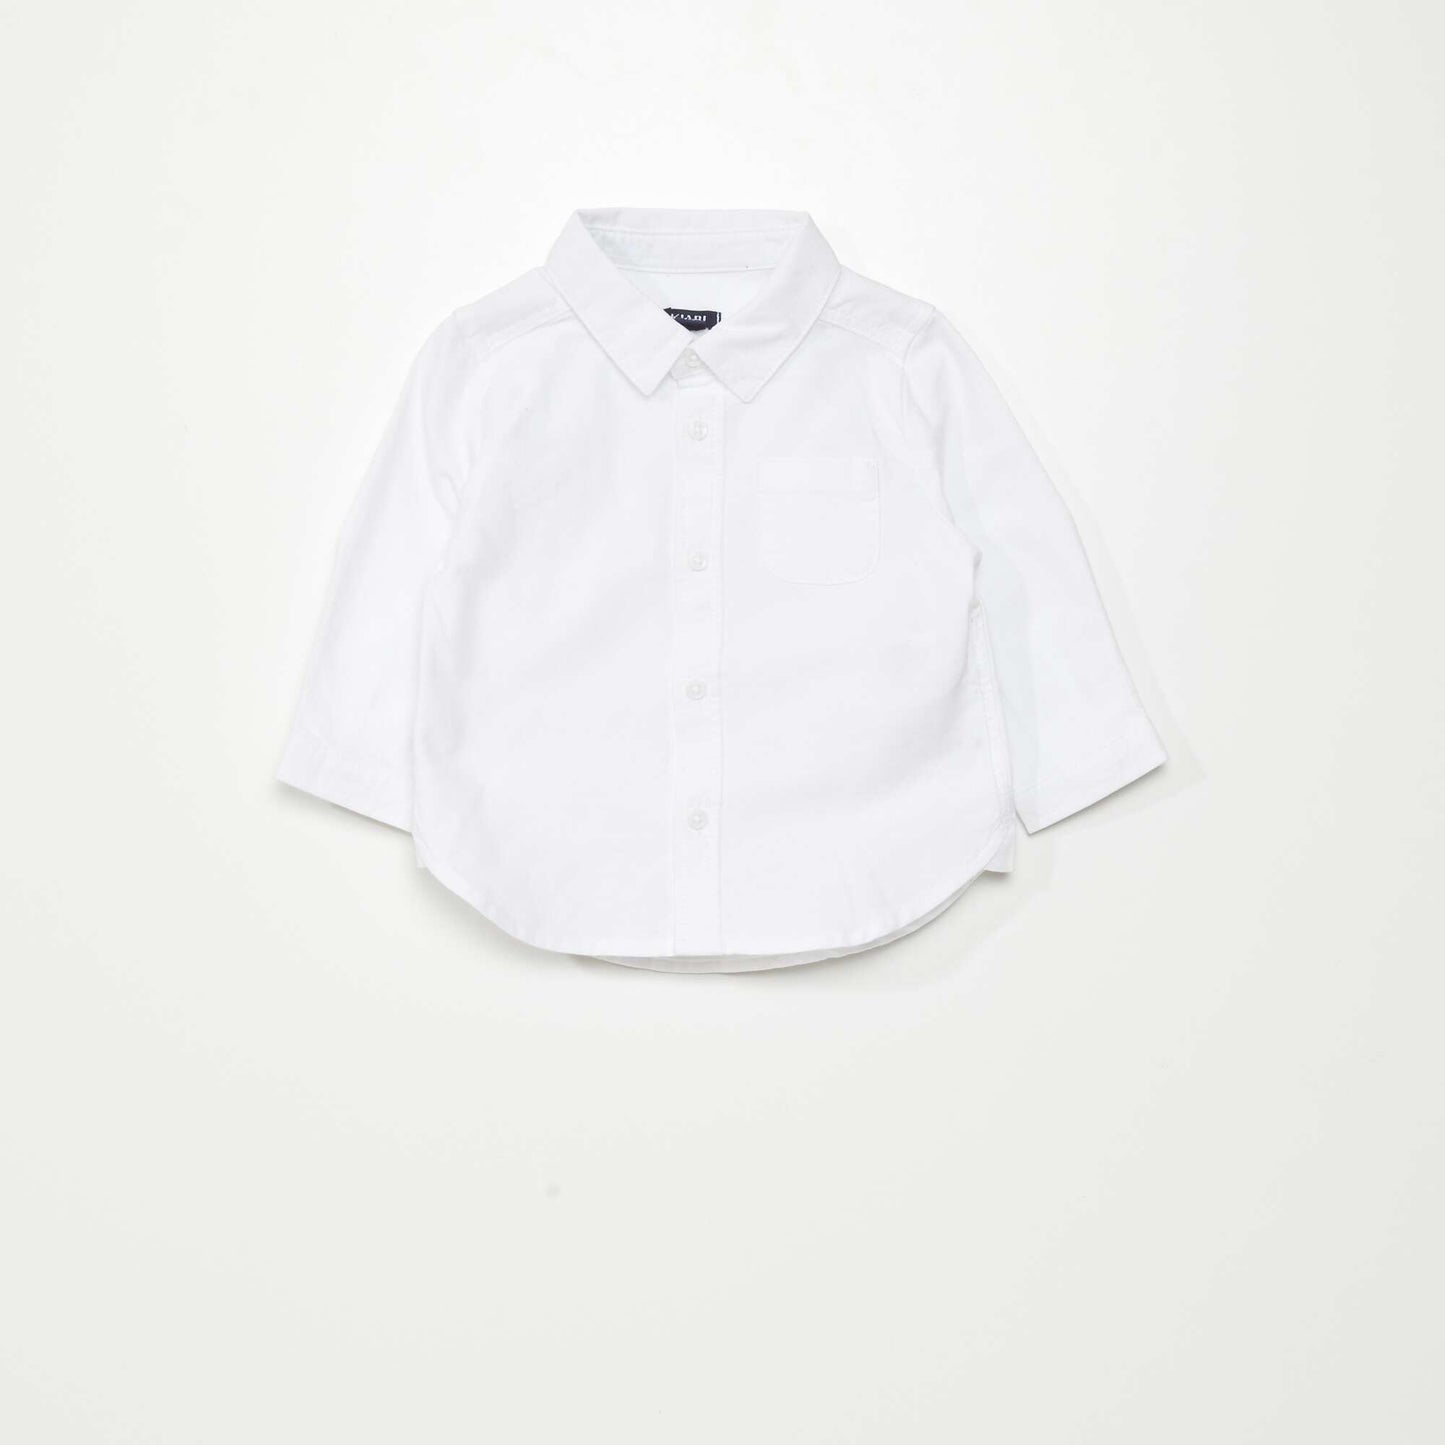 Ensemble pantalon + chemise Blanc/marine